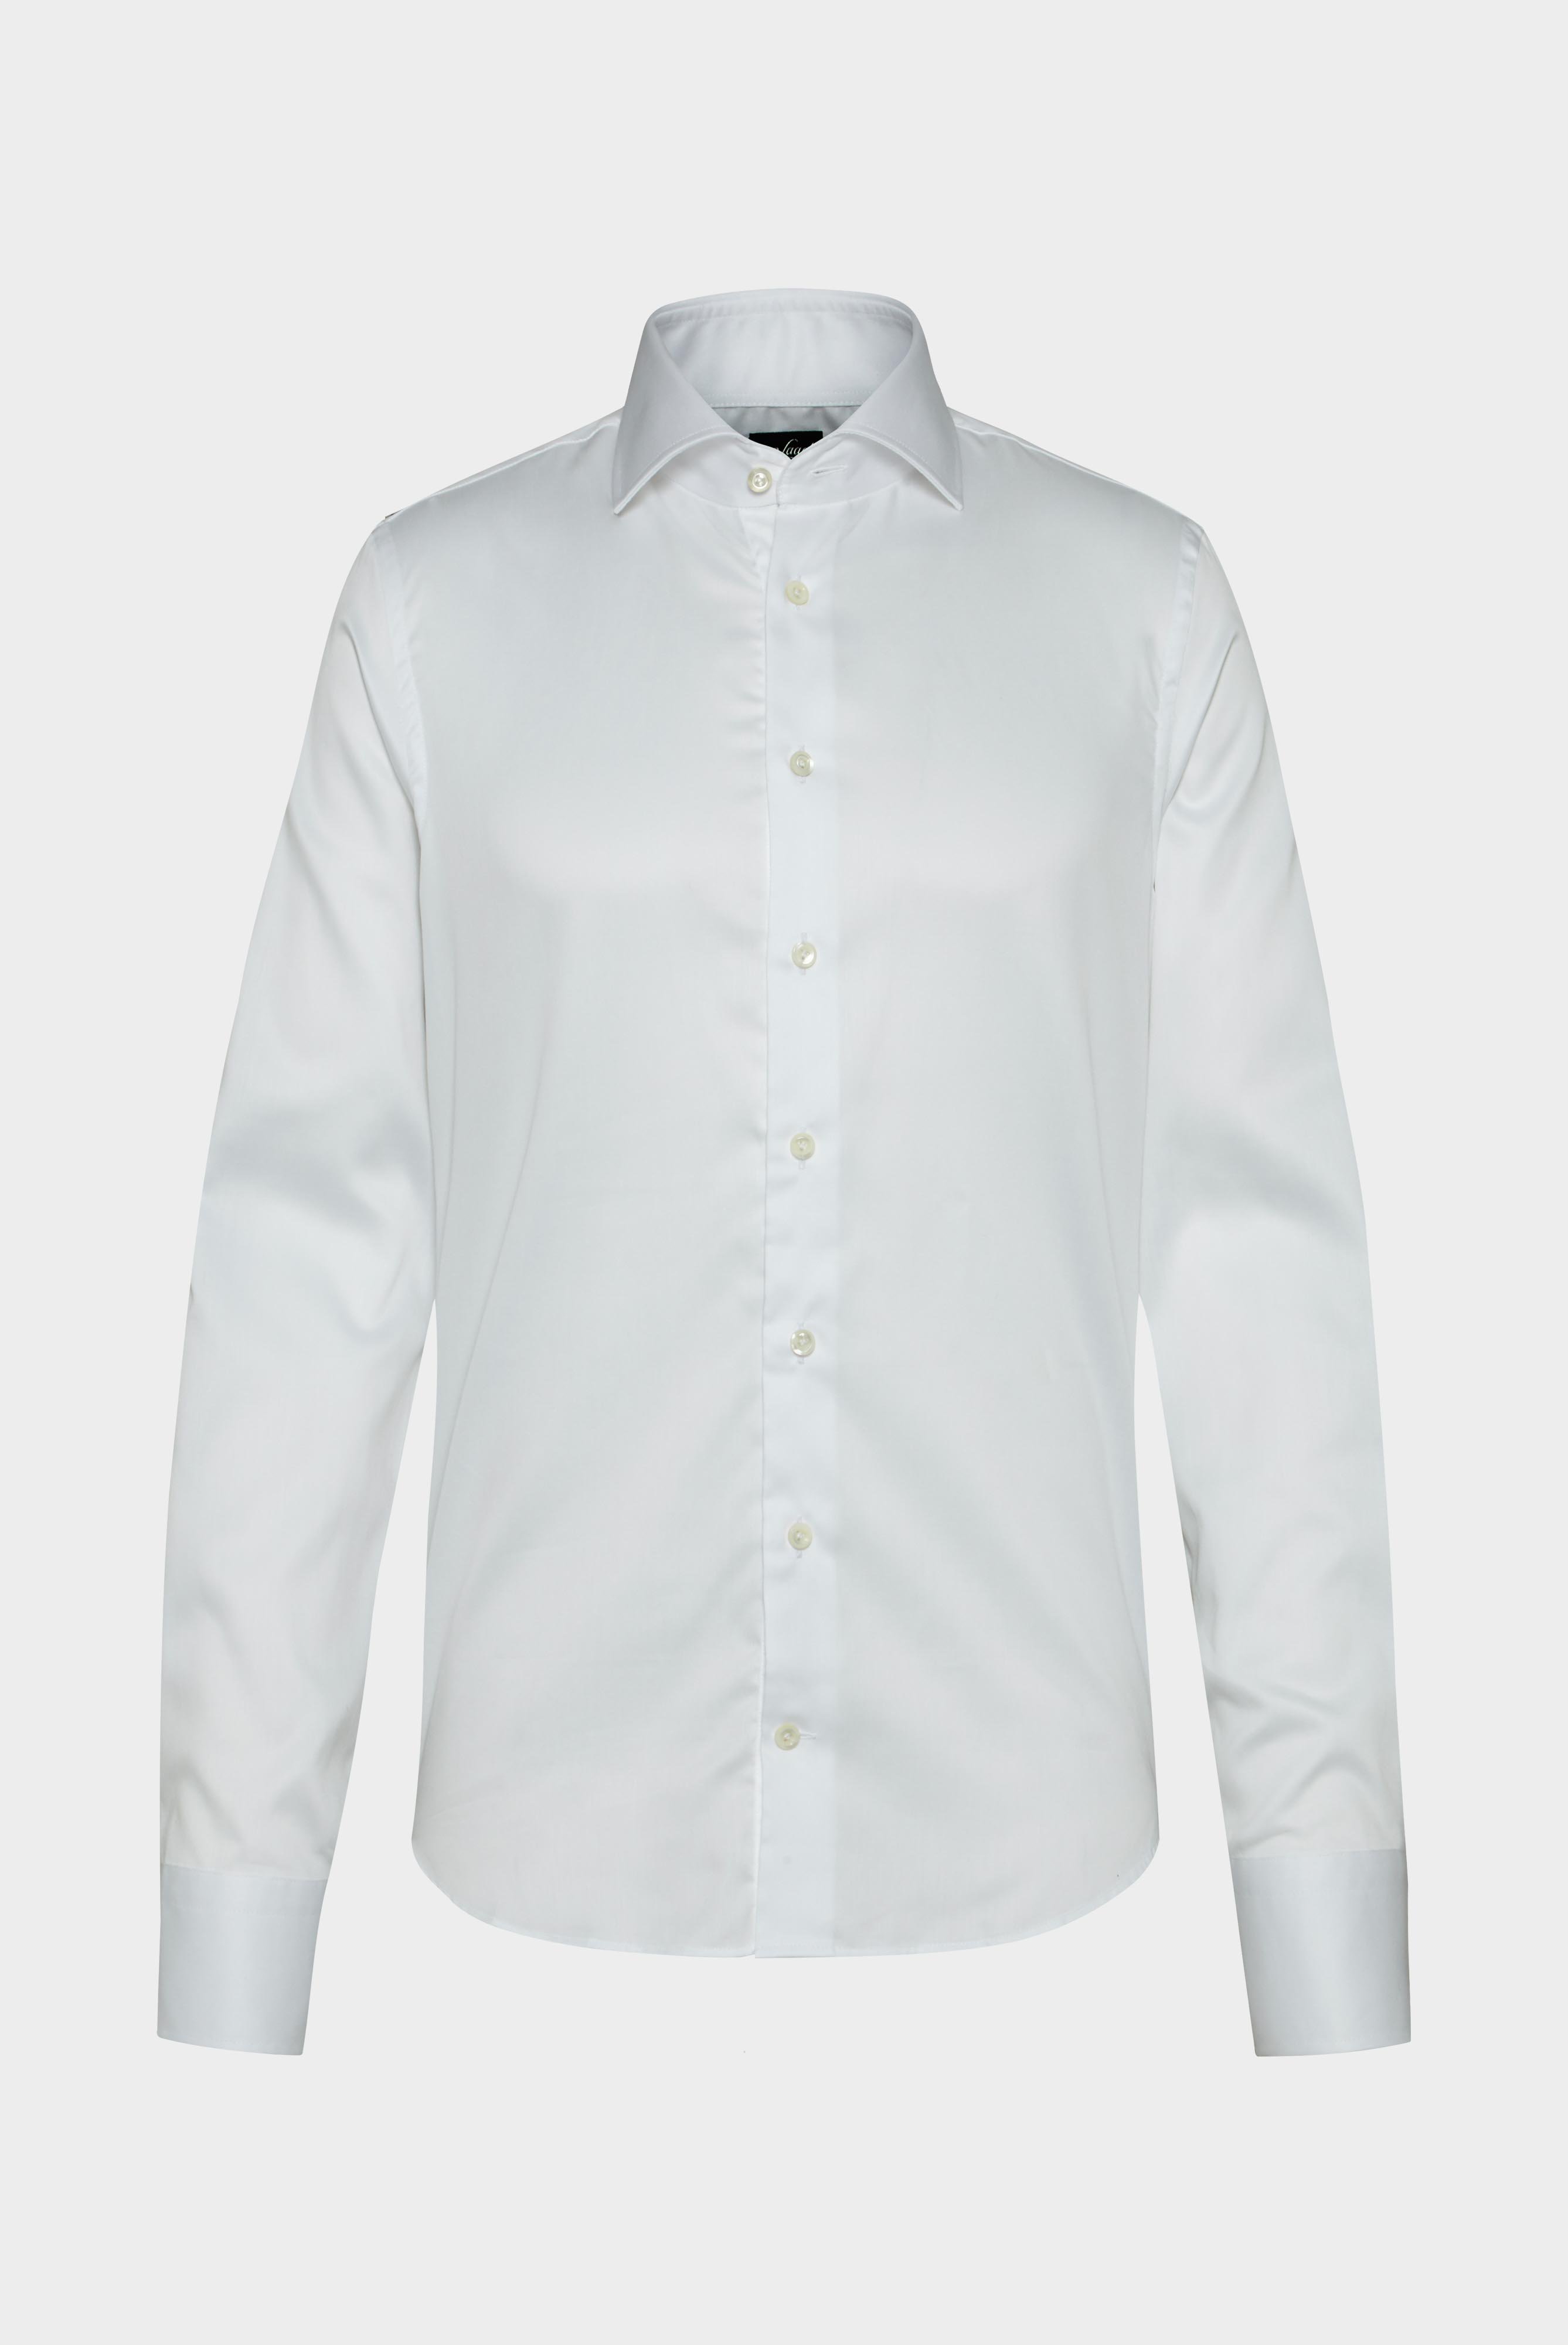 Bügelleichte Hemden+Bügelfreies Twill Hemd Slim Fit+20.2019.BQ.132241.000.37